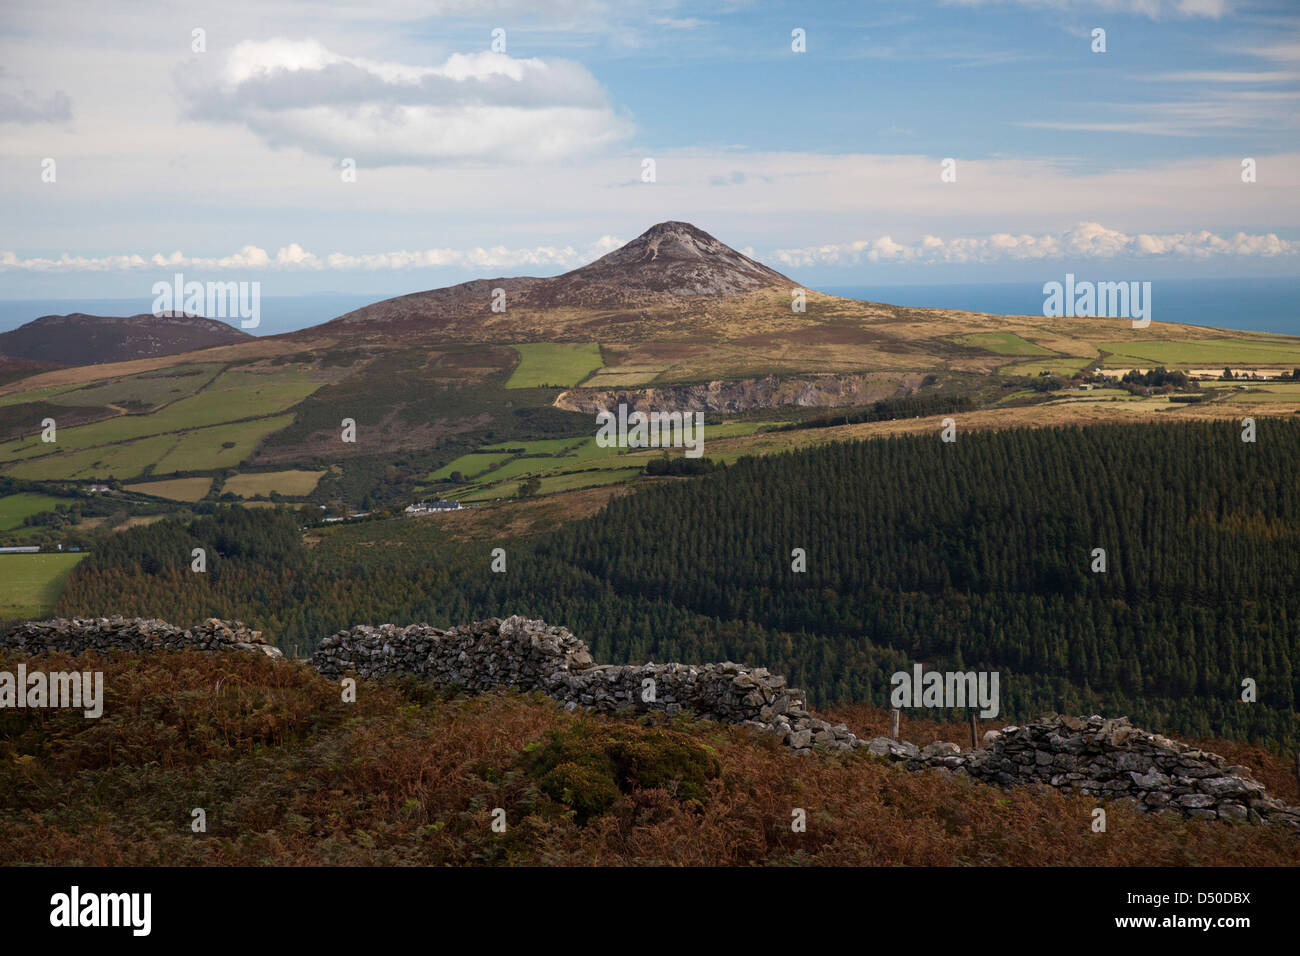 Grande Sugarloaf mountain visto dalle pendici del Mauilin, County Wicklow, Irlanda. Foto Stock